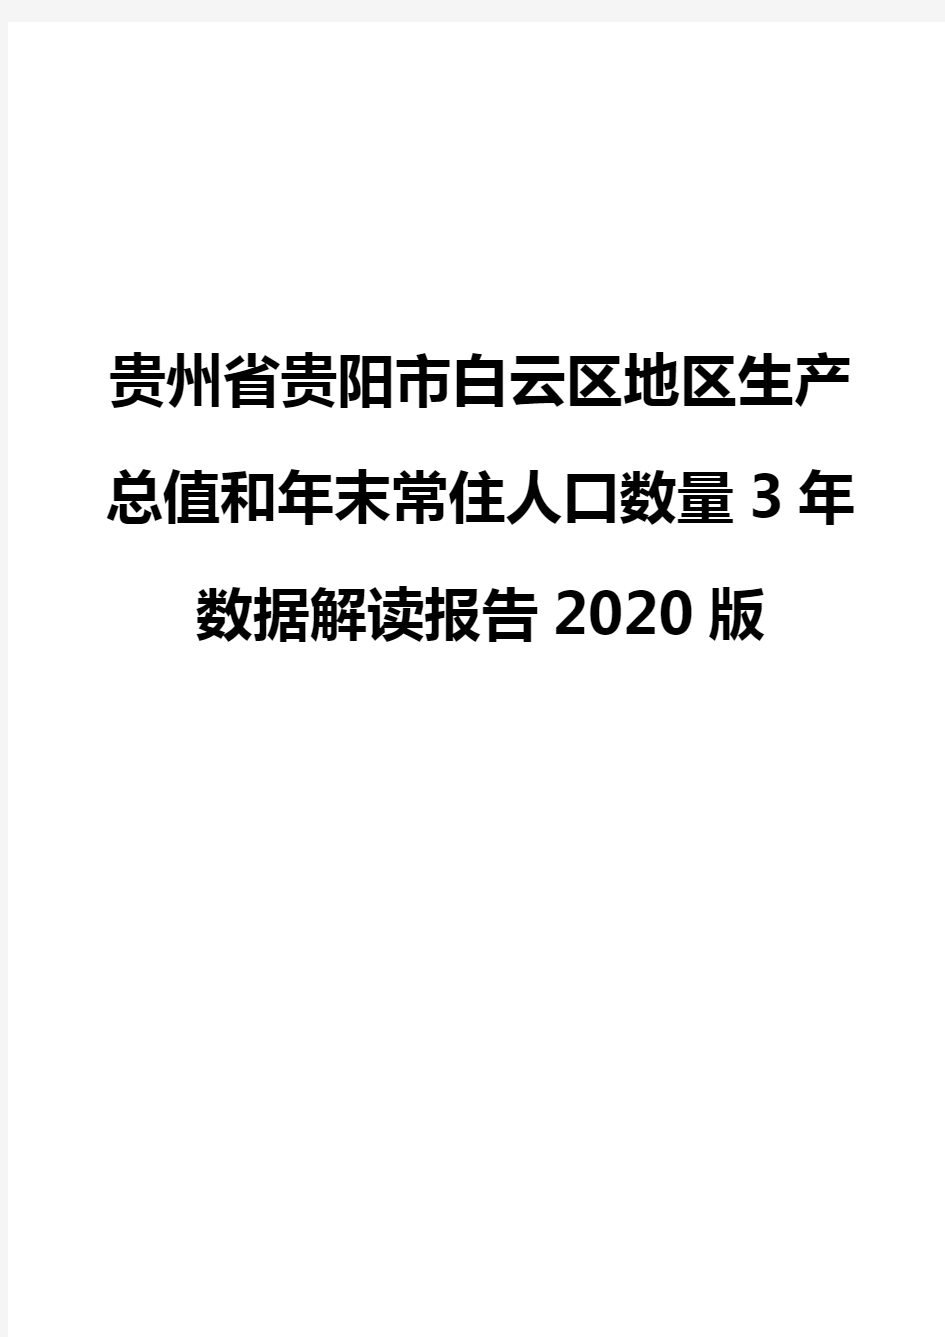 贵州省贵阳市白云区地区生产总值和年末常住人口数量3年数据解读报告2020版